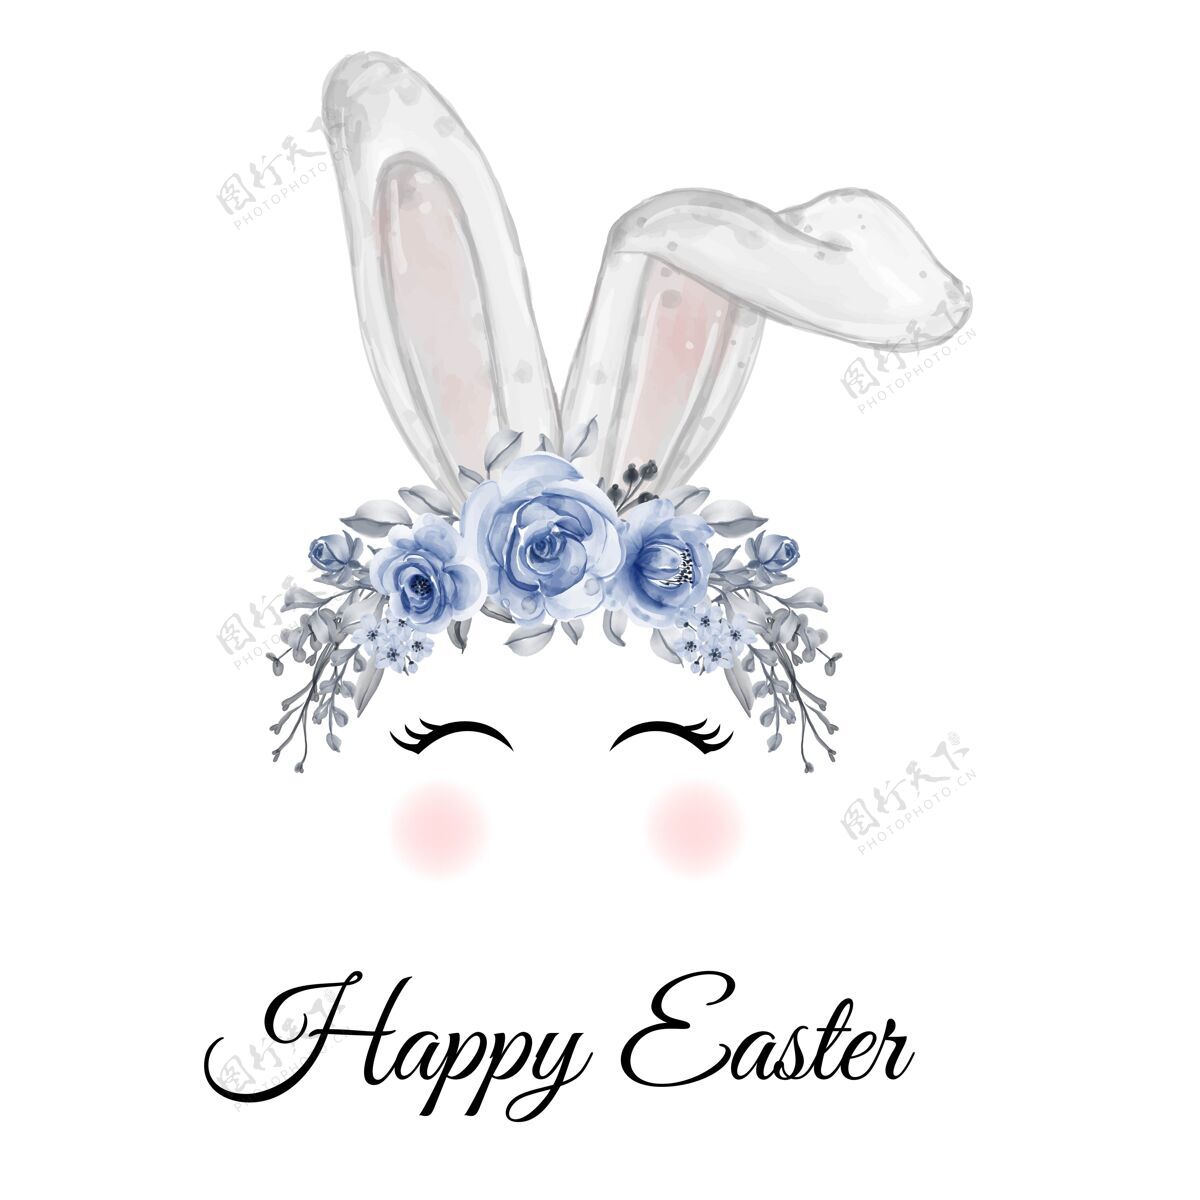 水彩画插图水彩复活节兔子耳朵花冠兔子传统蓝色